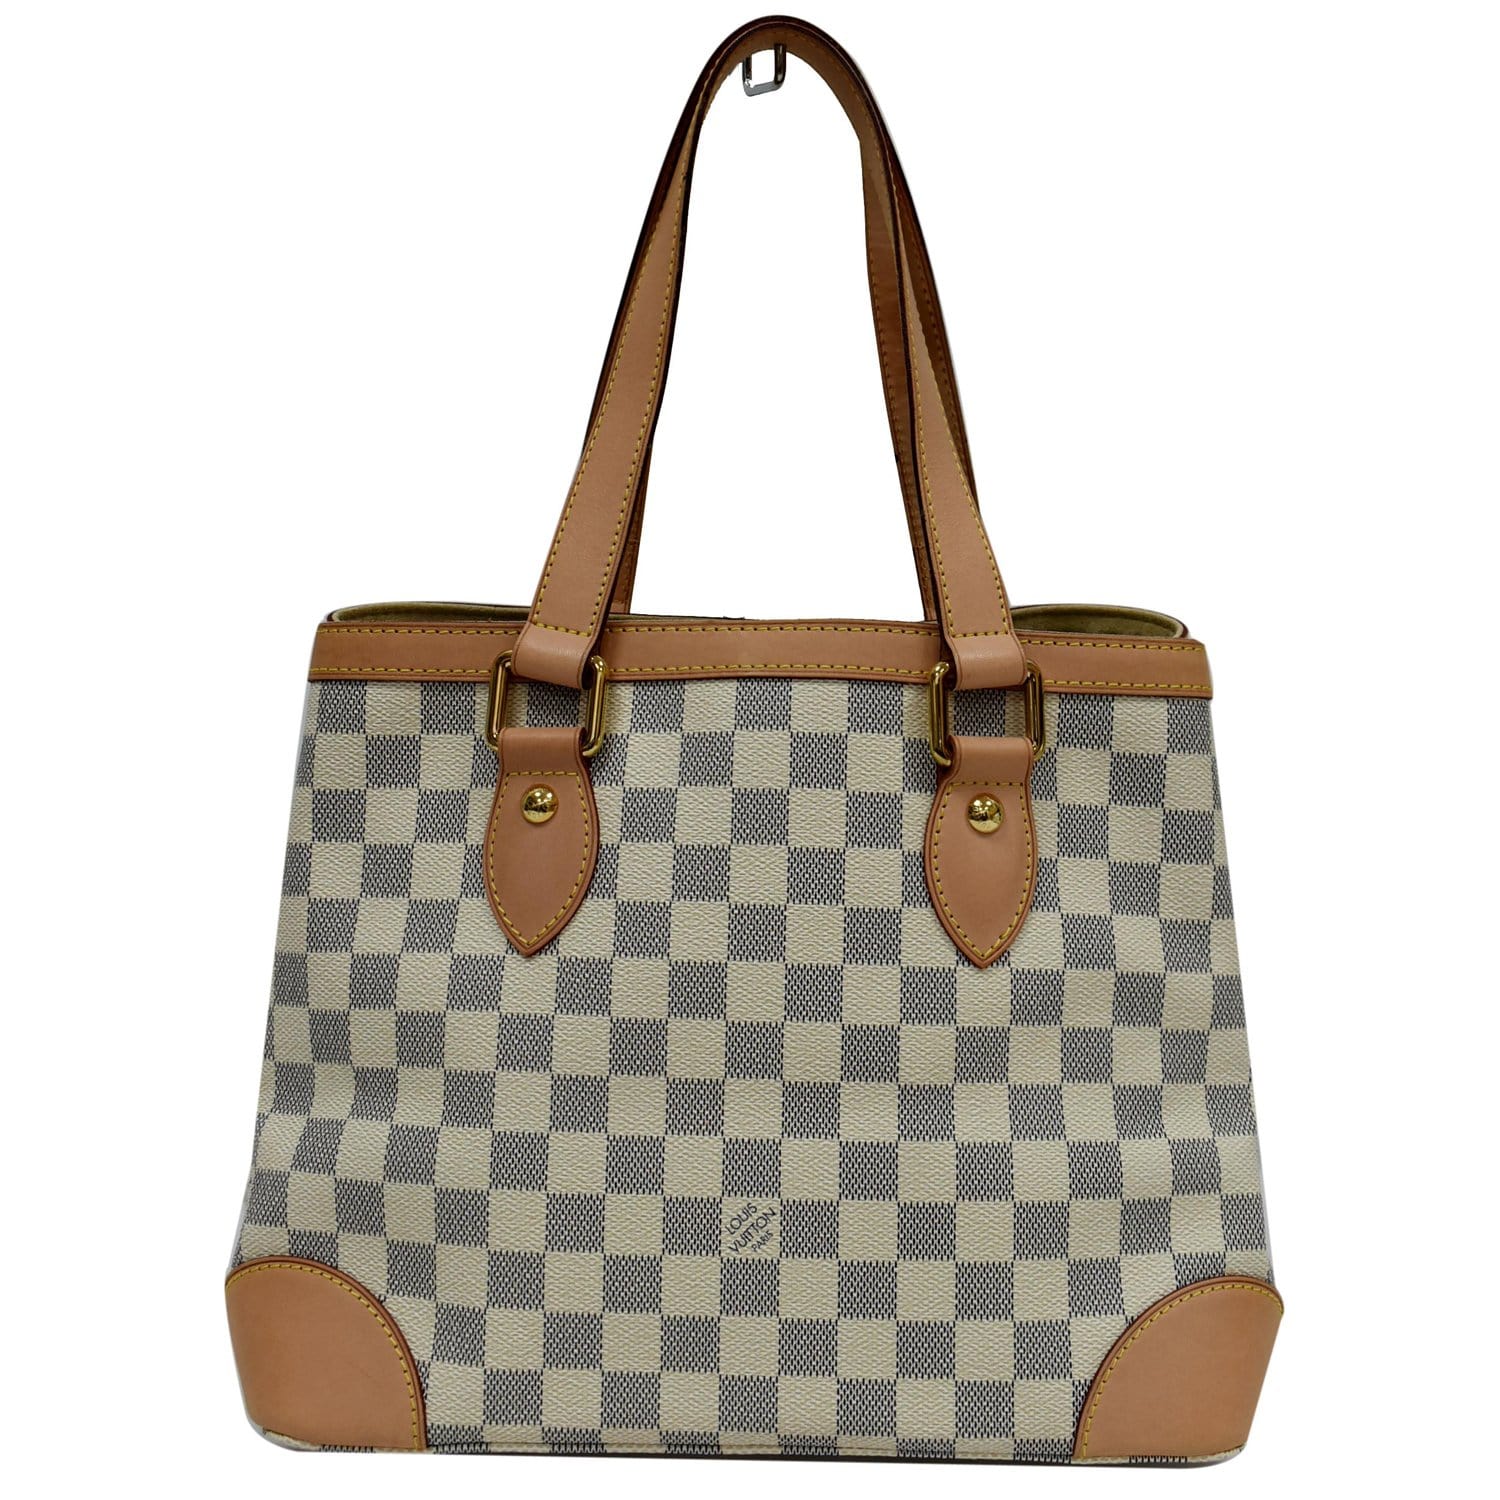 Louis Vuitton Damier Azur Canvas Hampstead PM hand bag purse